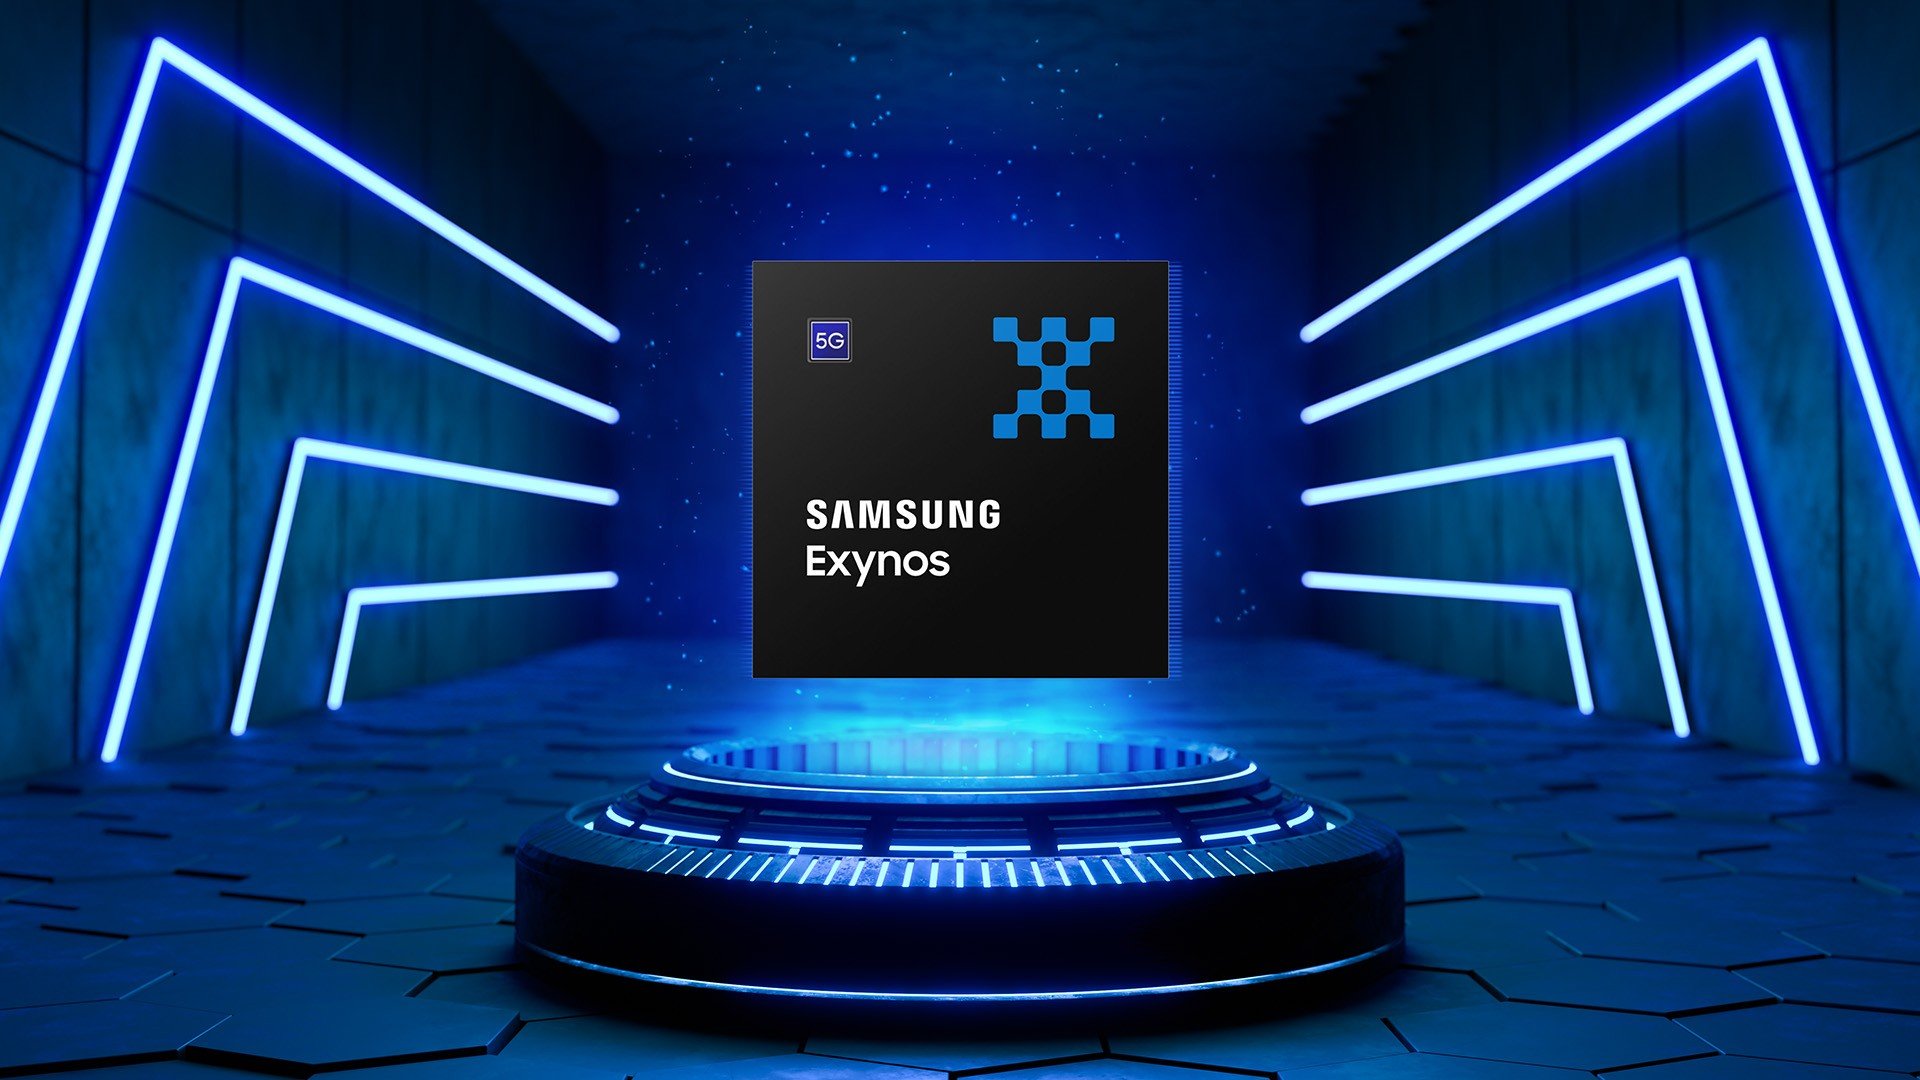 Samsung desmiente los rumores sobre cambiar el nombre del chipset Exynos